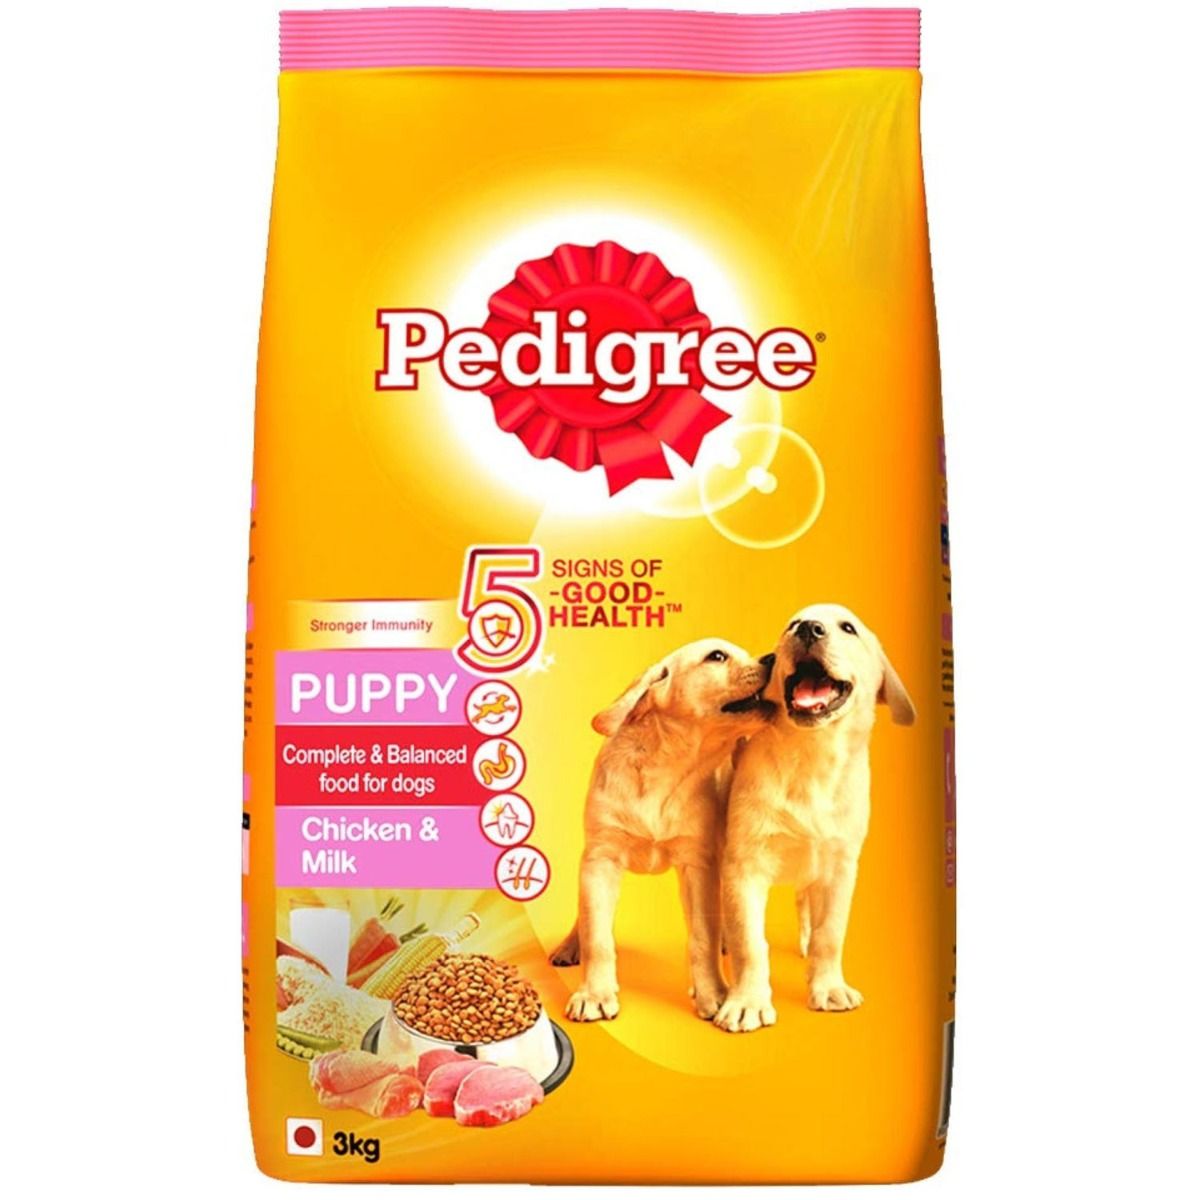 Buy Pedigree Puppy Dog Food With Chicken & Milk, 3 kg Online